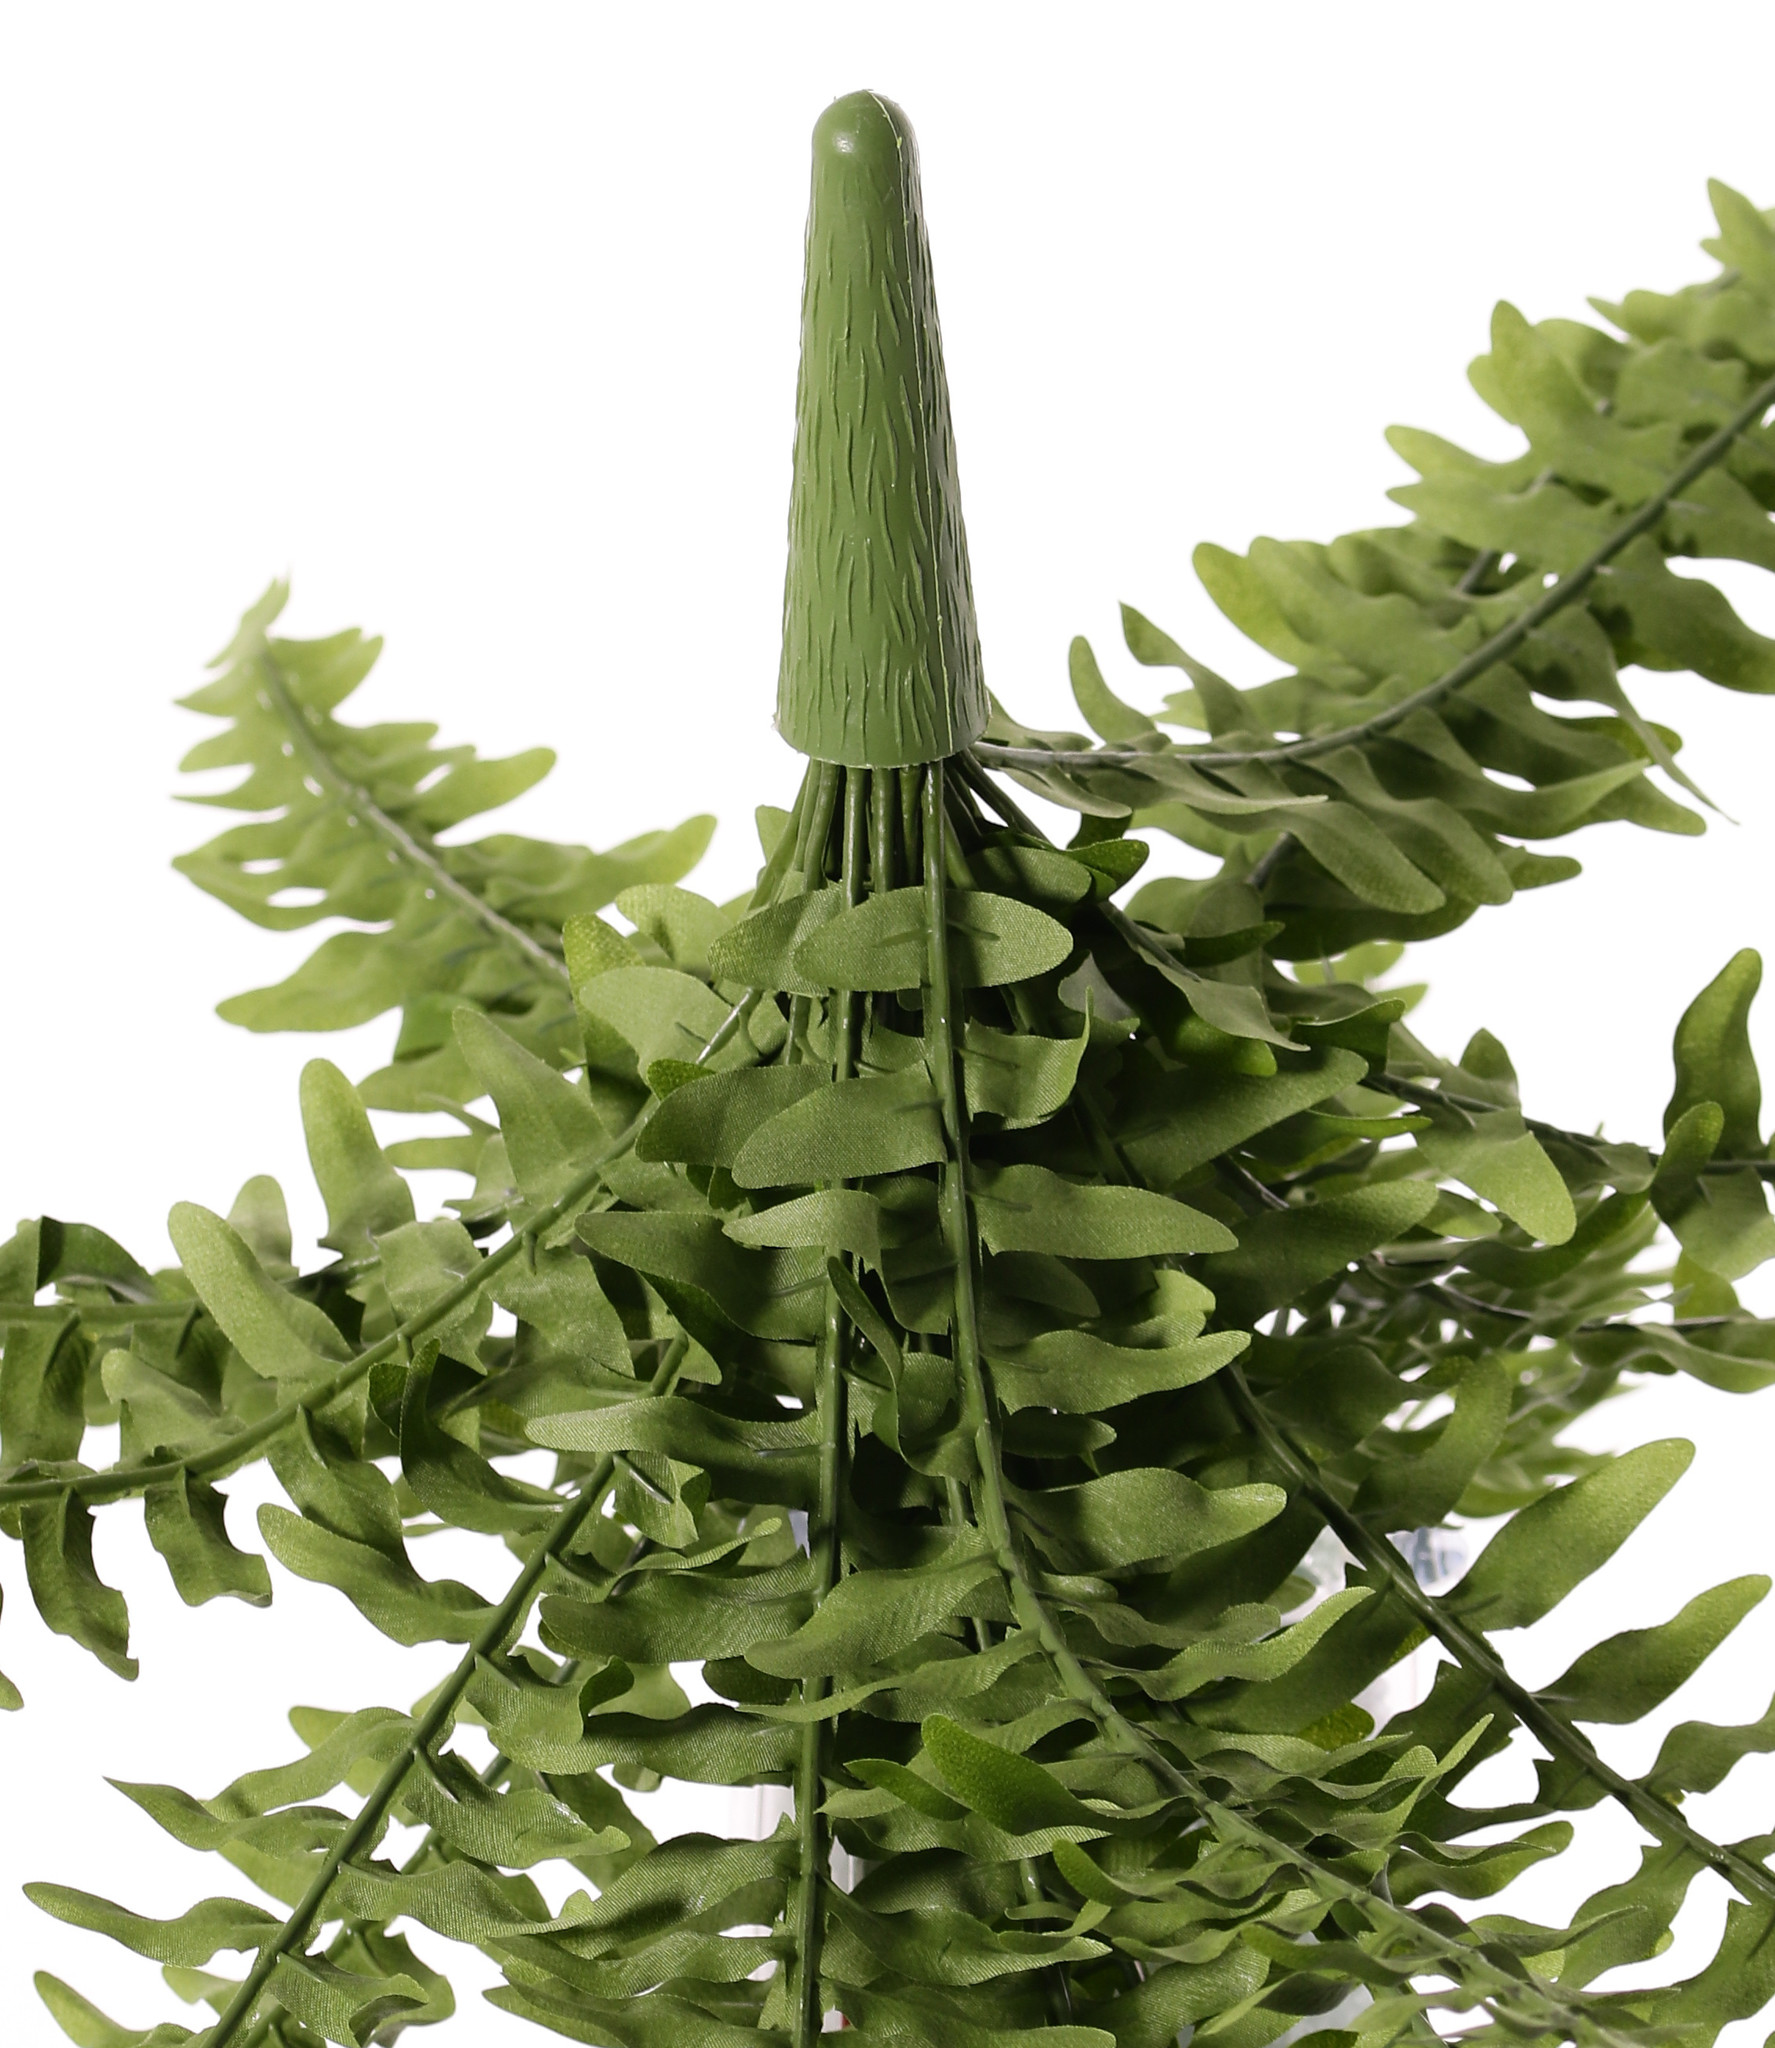 Boston fern (Nephrolepsis) 21 hojas, 2 colores de verde, Ø 50cm, resistente al fuego